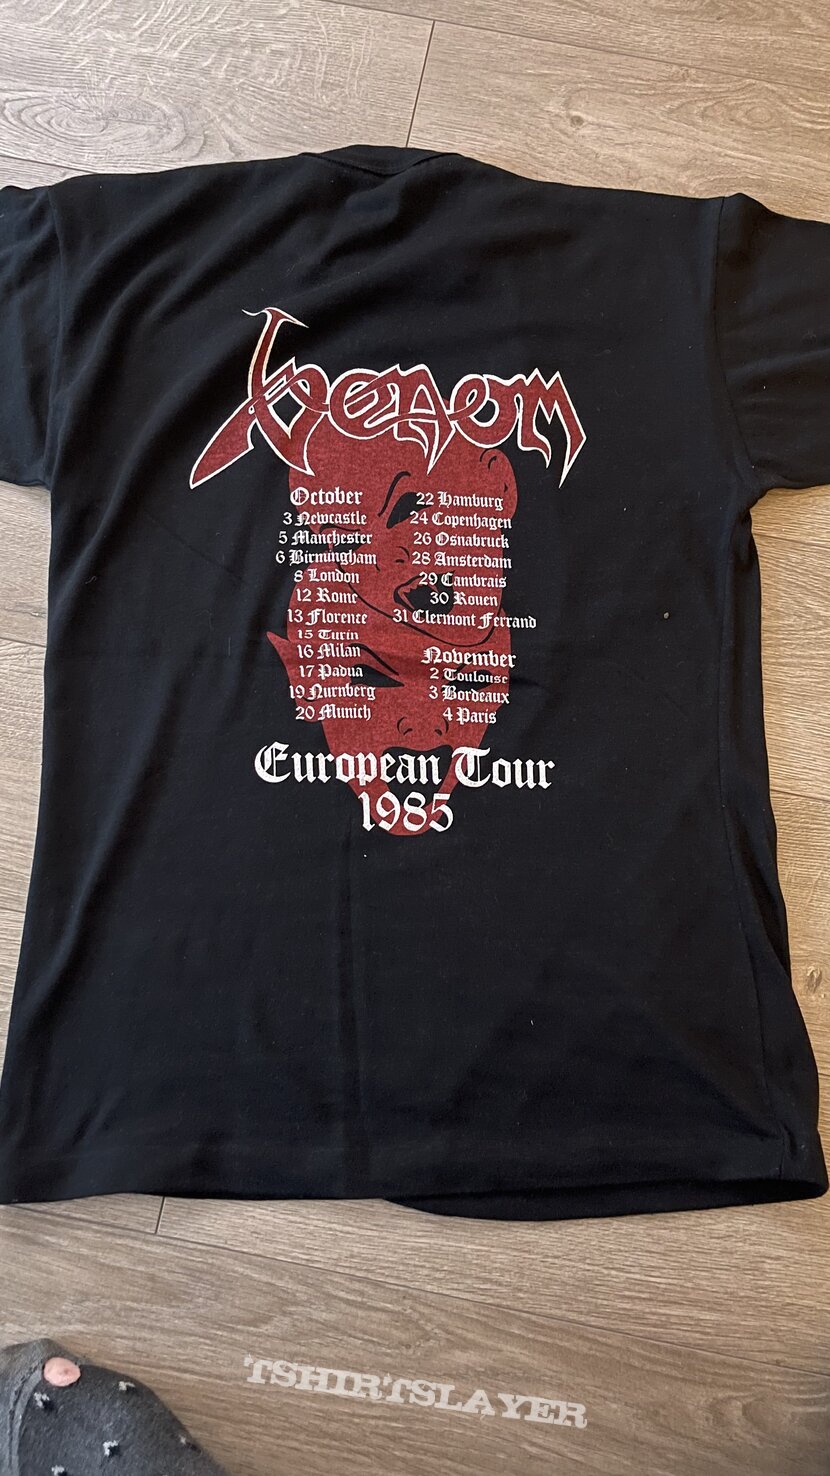 Venom tour shirt